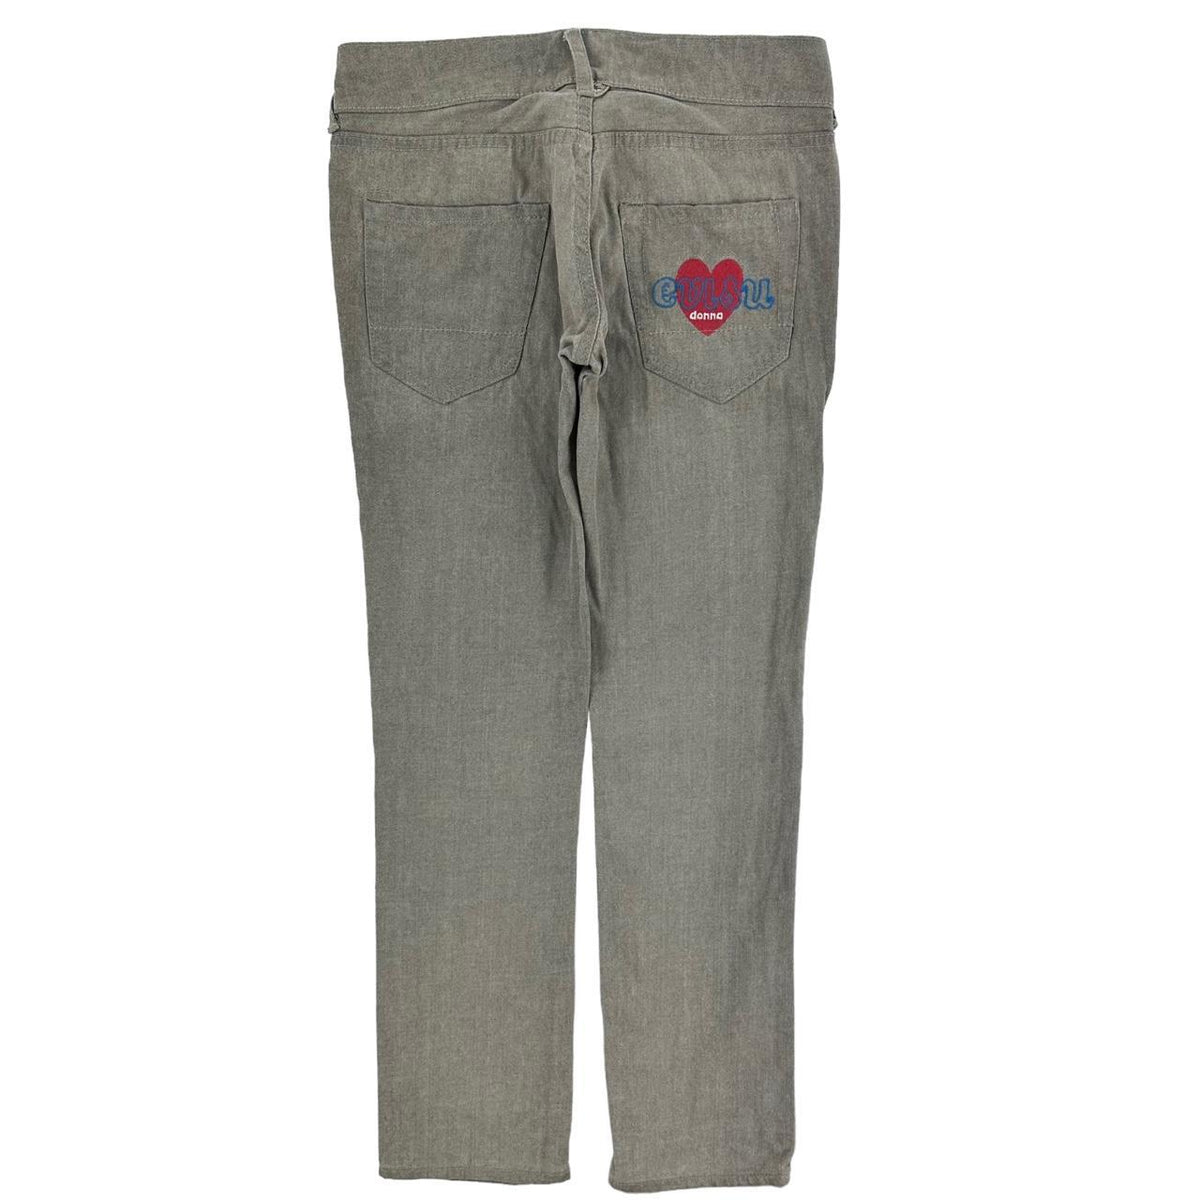 Vintage Evisu Heart Jeans Trousers W29